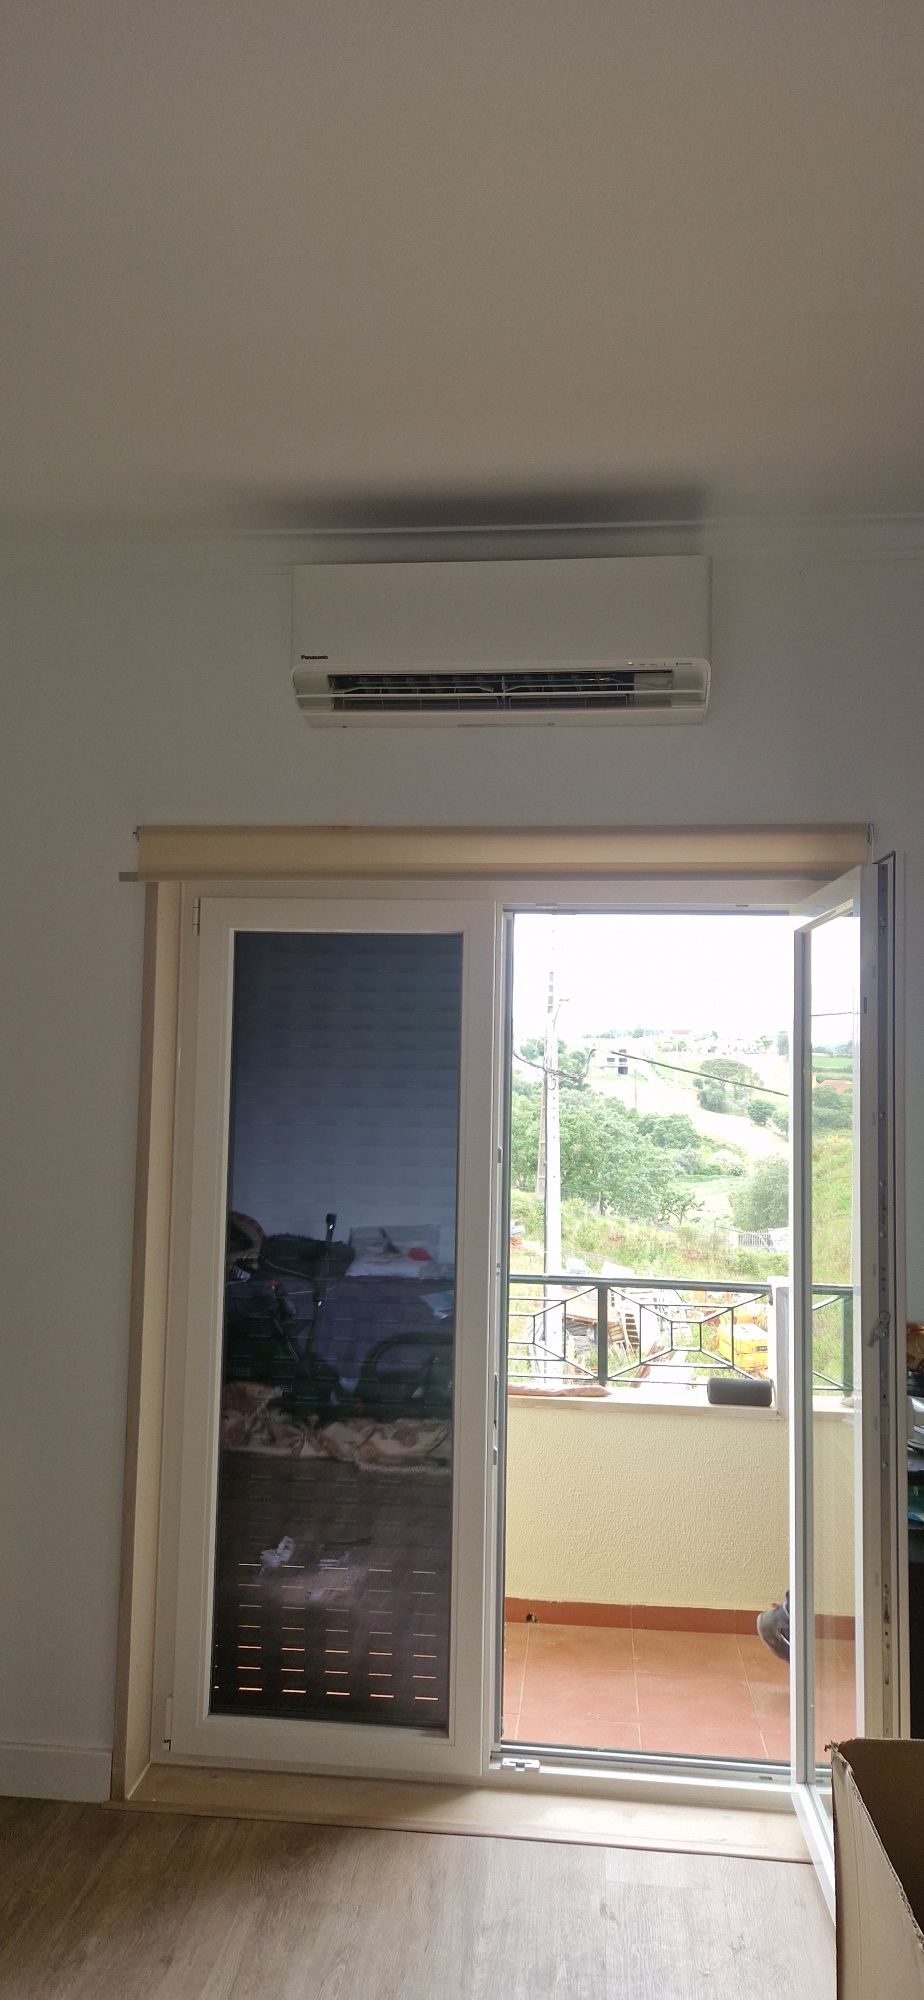 Instalação de ar condicionados